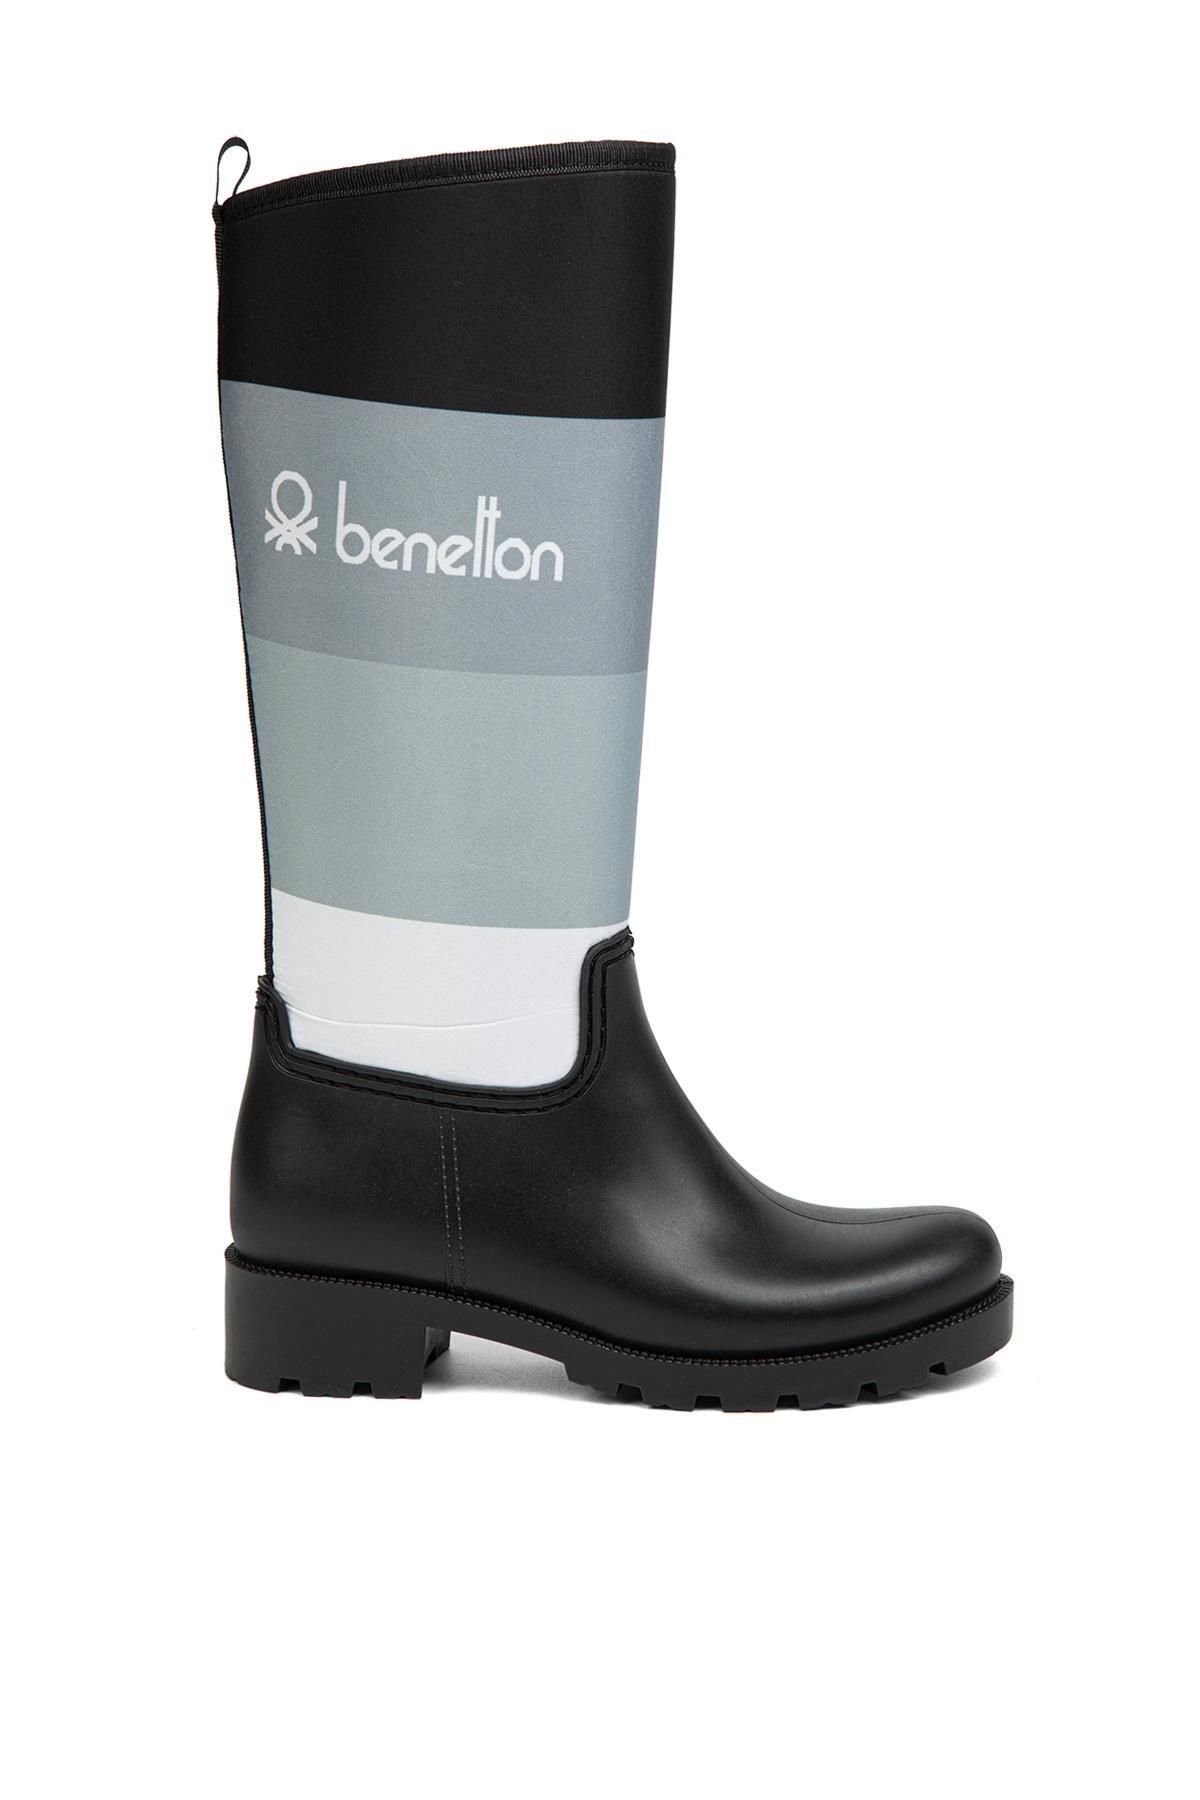 Benetton ® | BN-50010 - 34124 Siyah Beyaz - Kadın Çizme